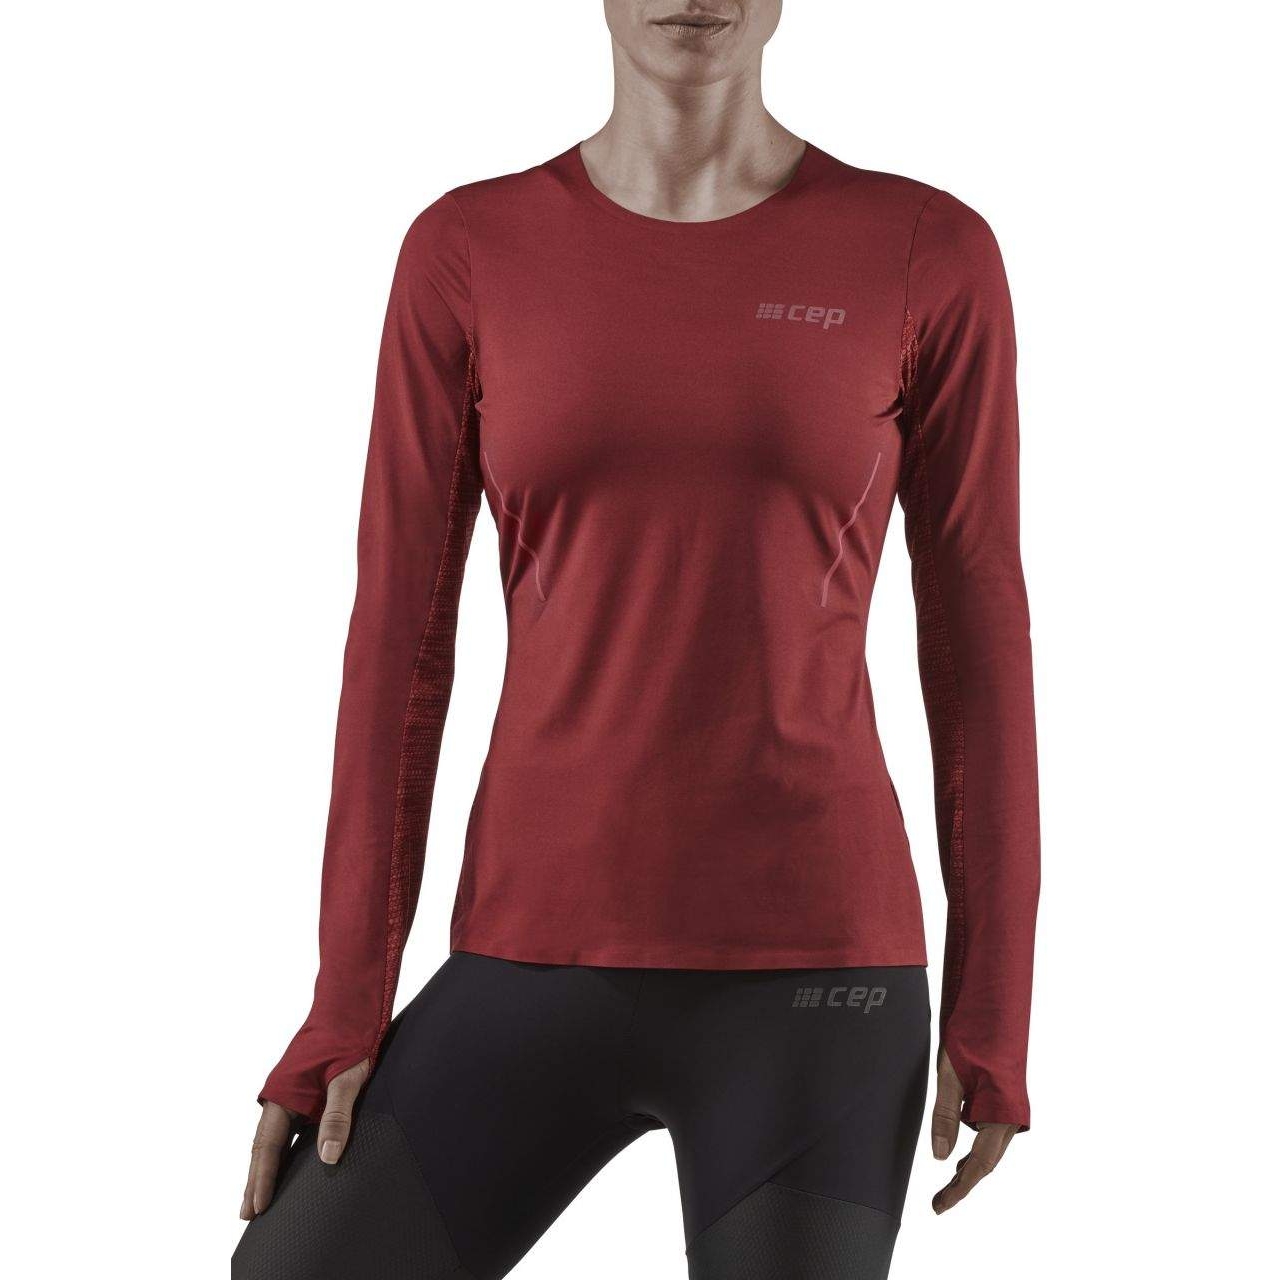 Productfoto van CEP Run Shirt met Lange Mouwen Dames - dark red